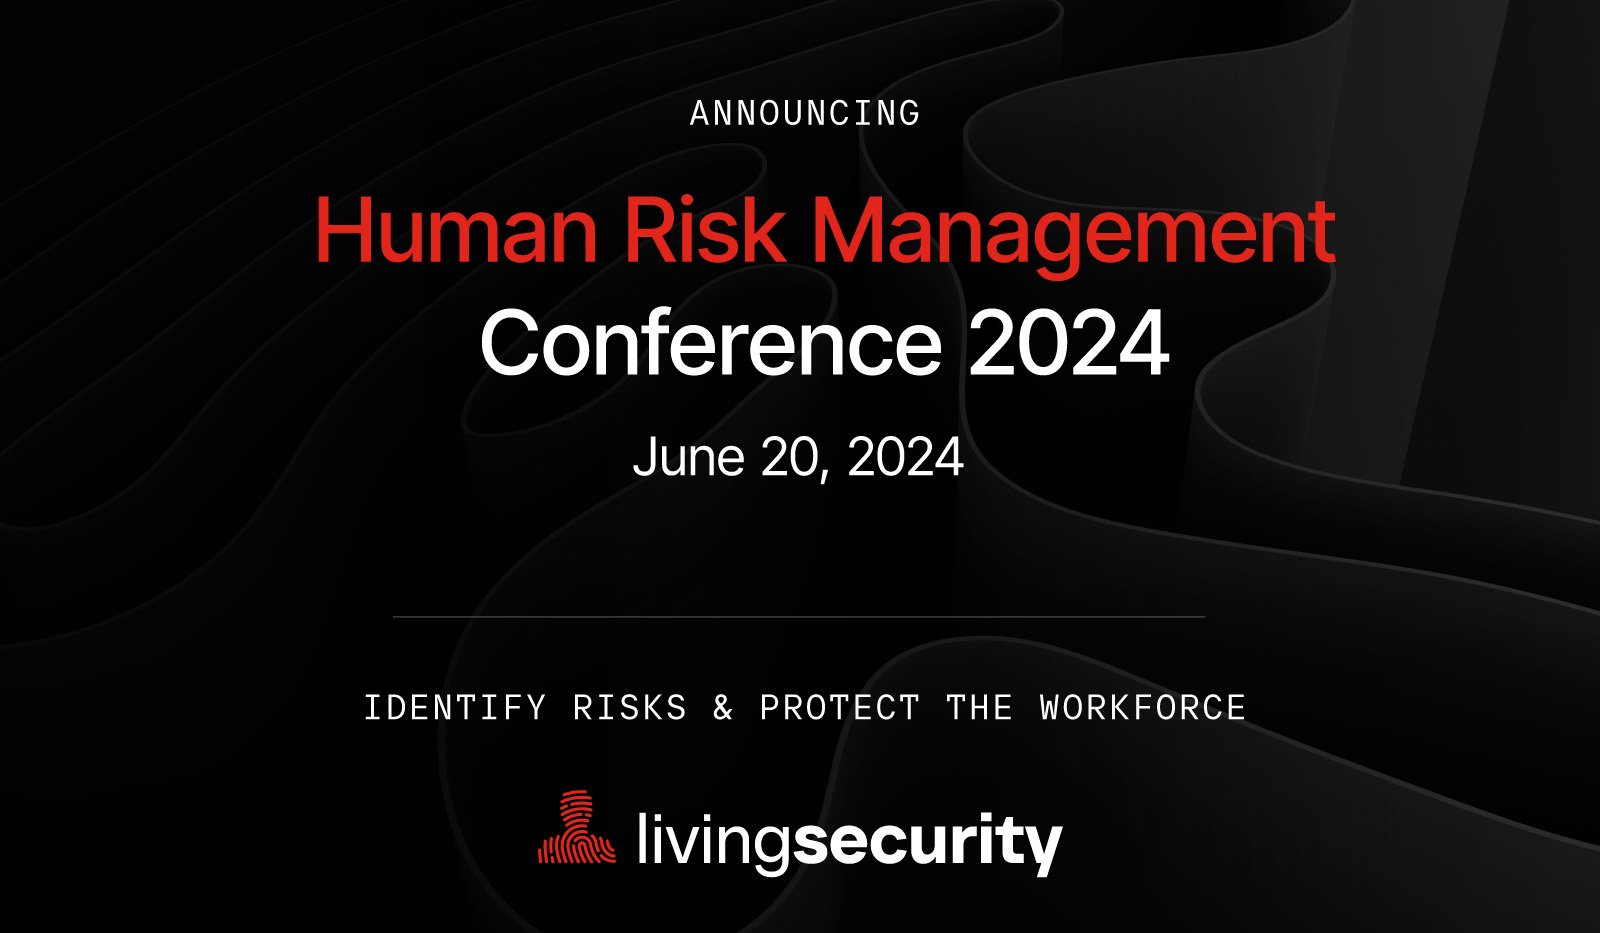 Human Risk Management Conference 2024